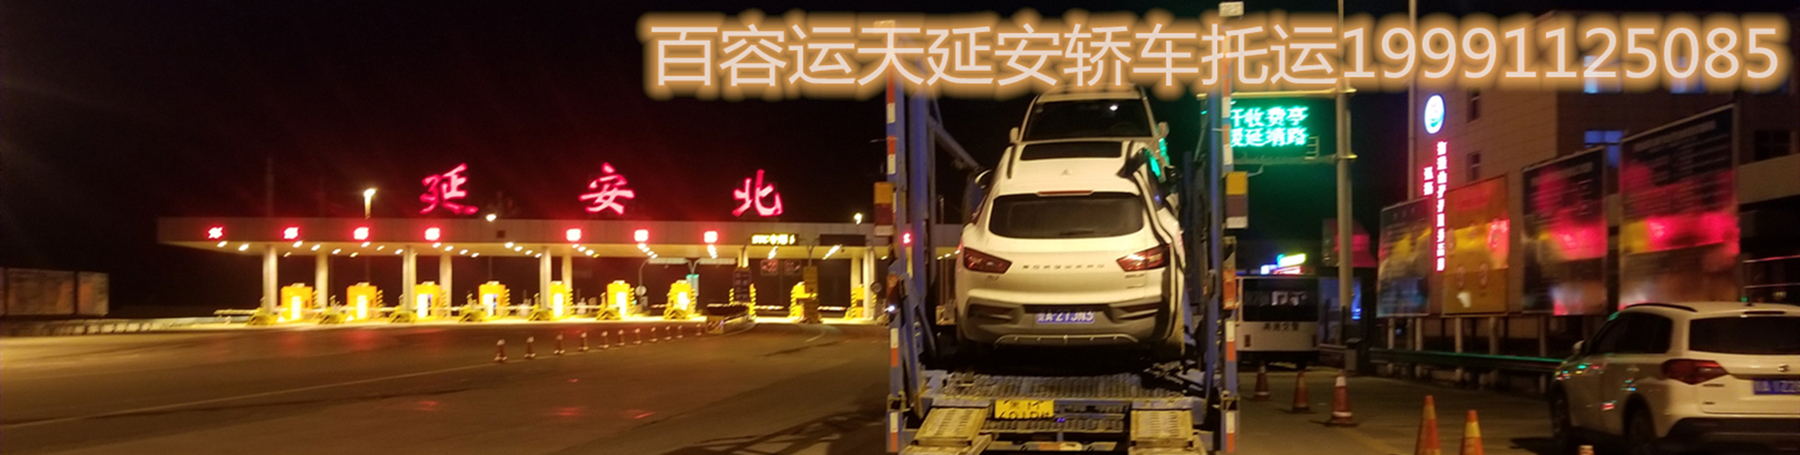 北京市延安到西安轿车托运公司 轿车物流厂家延安到西安轿车托运公司 轿车物流